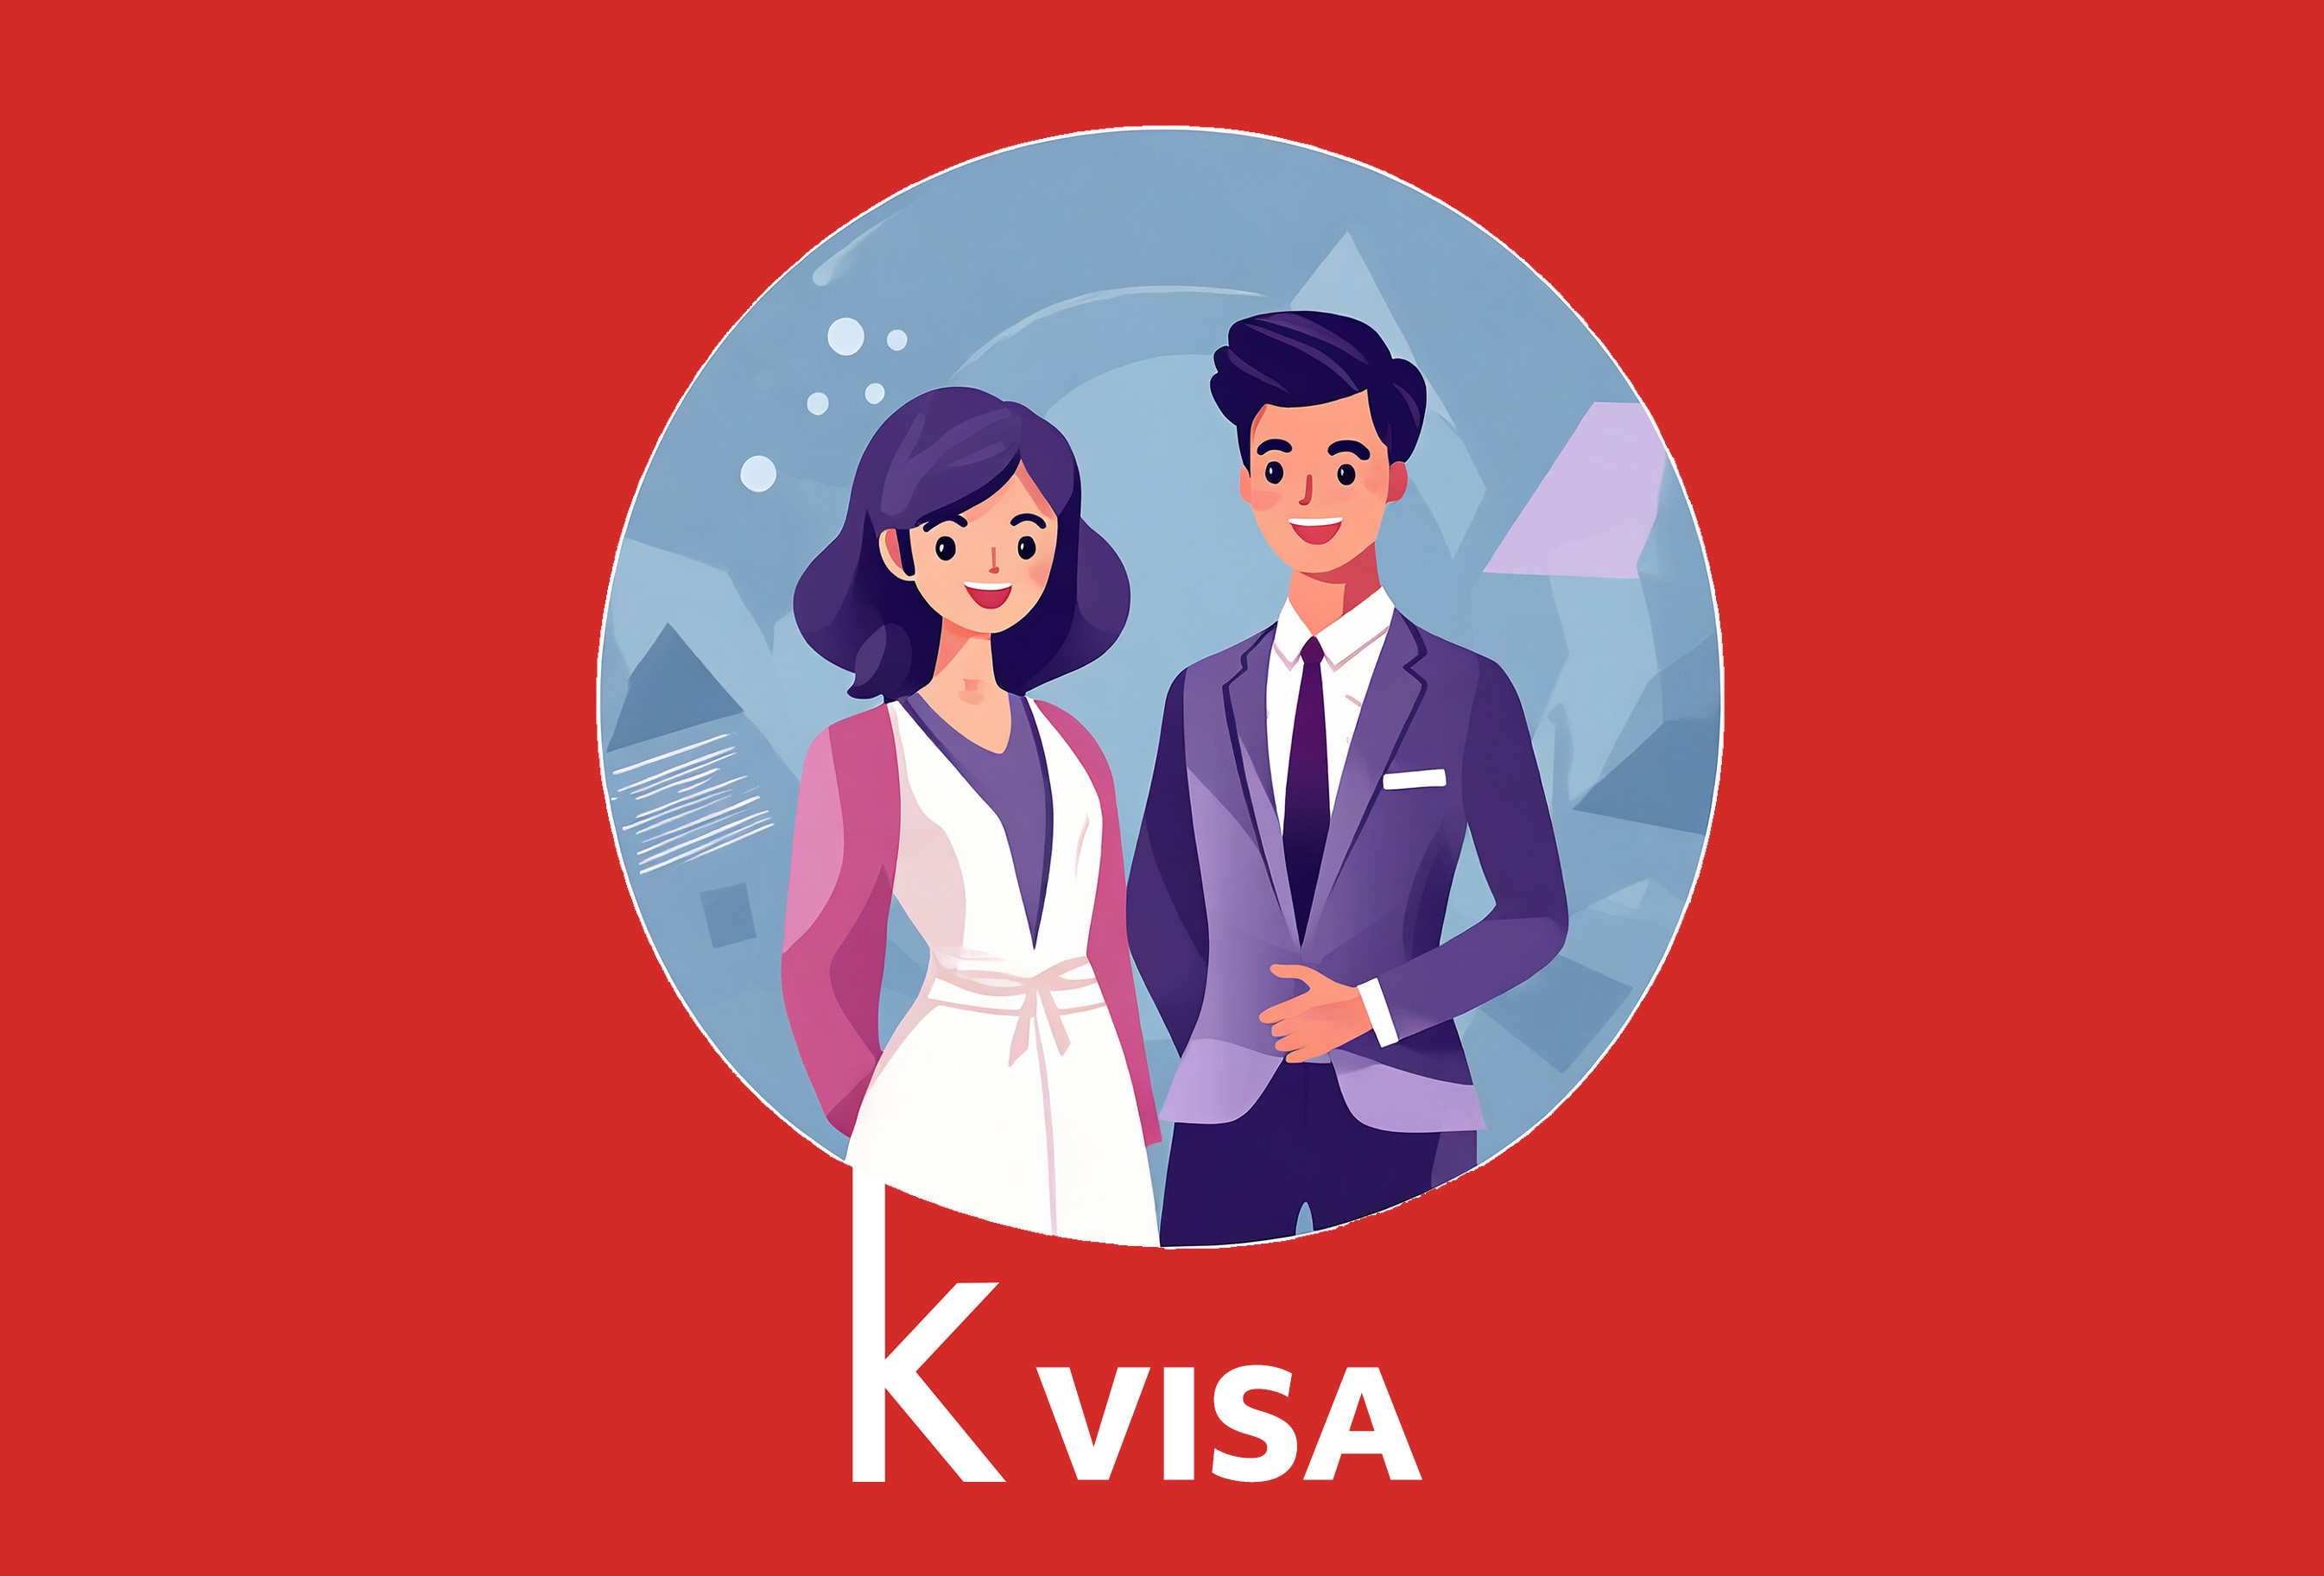 F2 Visa profile.jpg